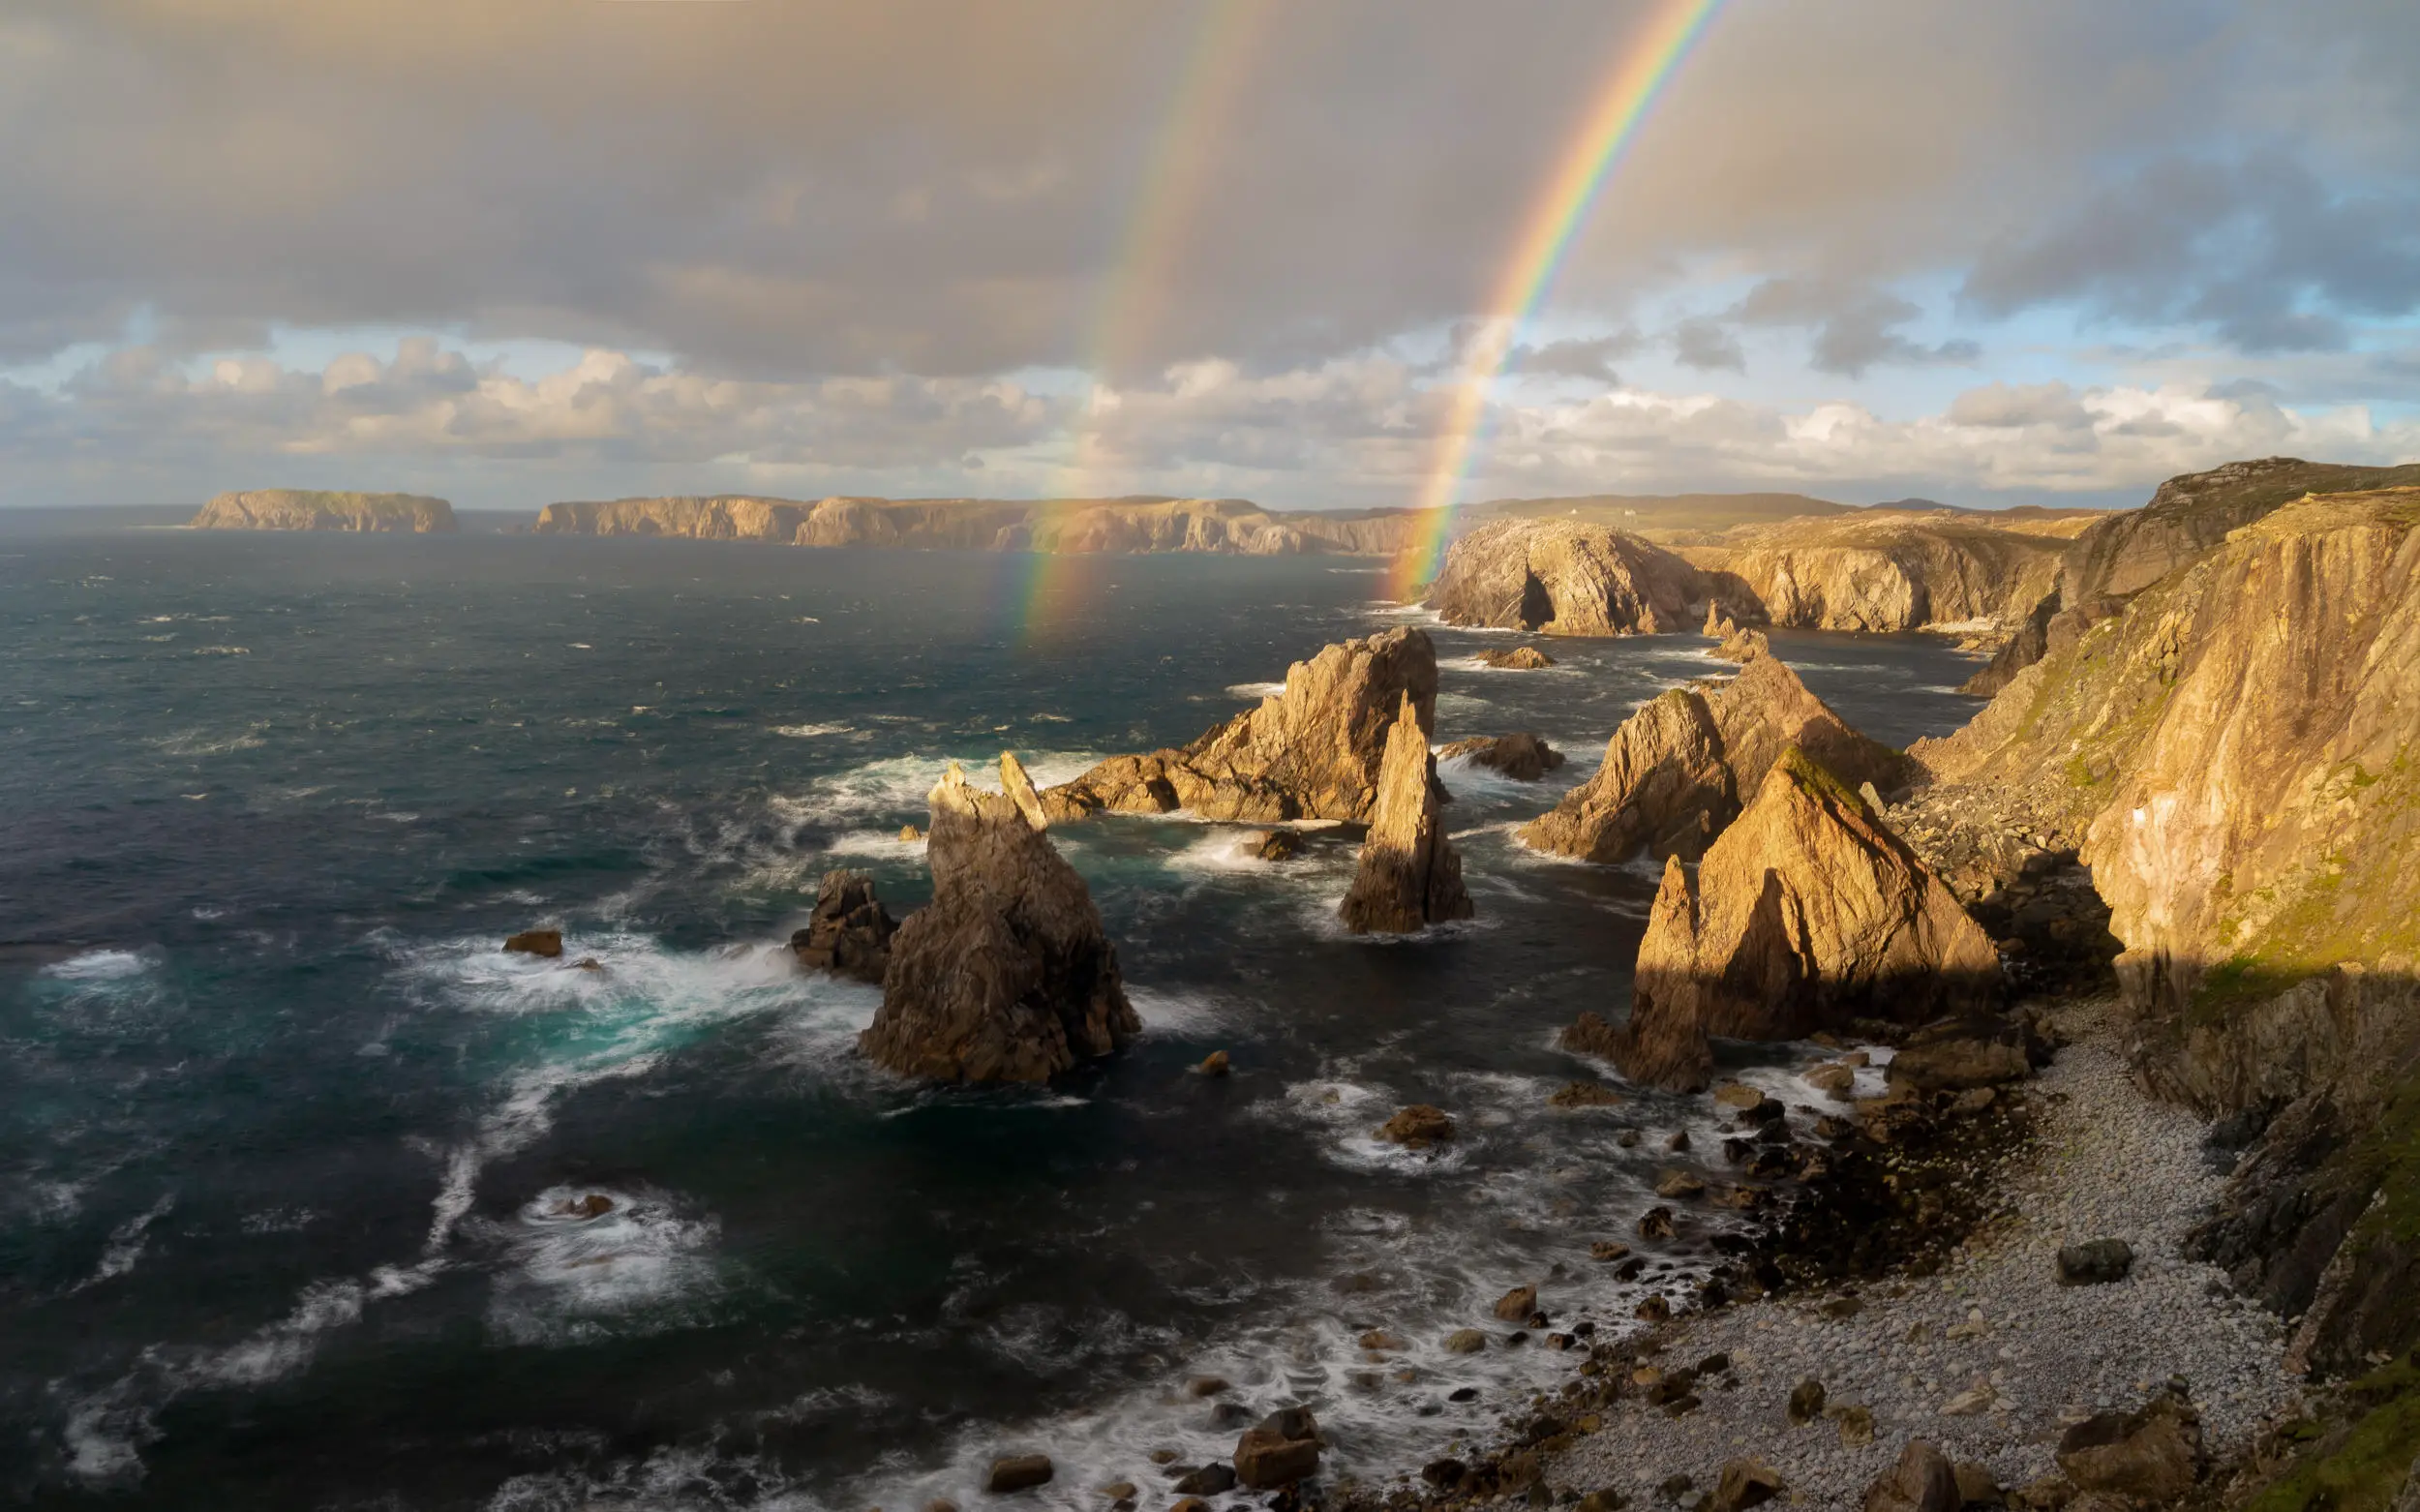 Les arcs-en-ciel sortent des côtes rocheuses de l'île de Lewis en Écosse. Le photographe Richard Fox écrit : 